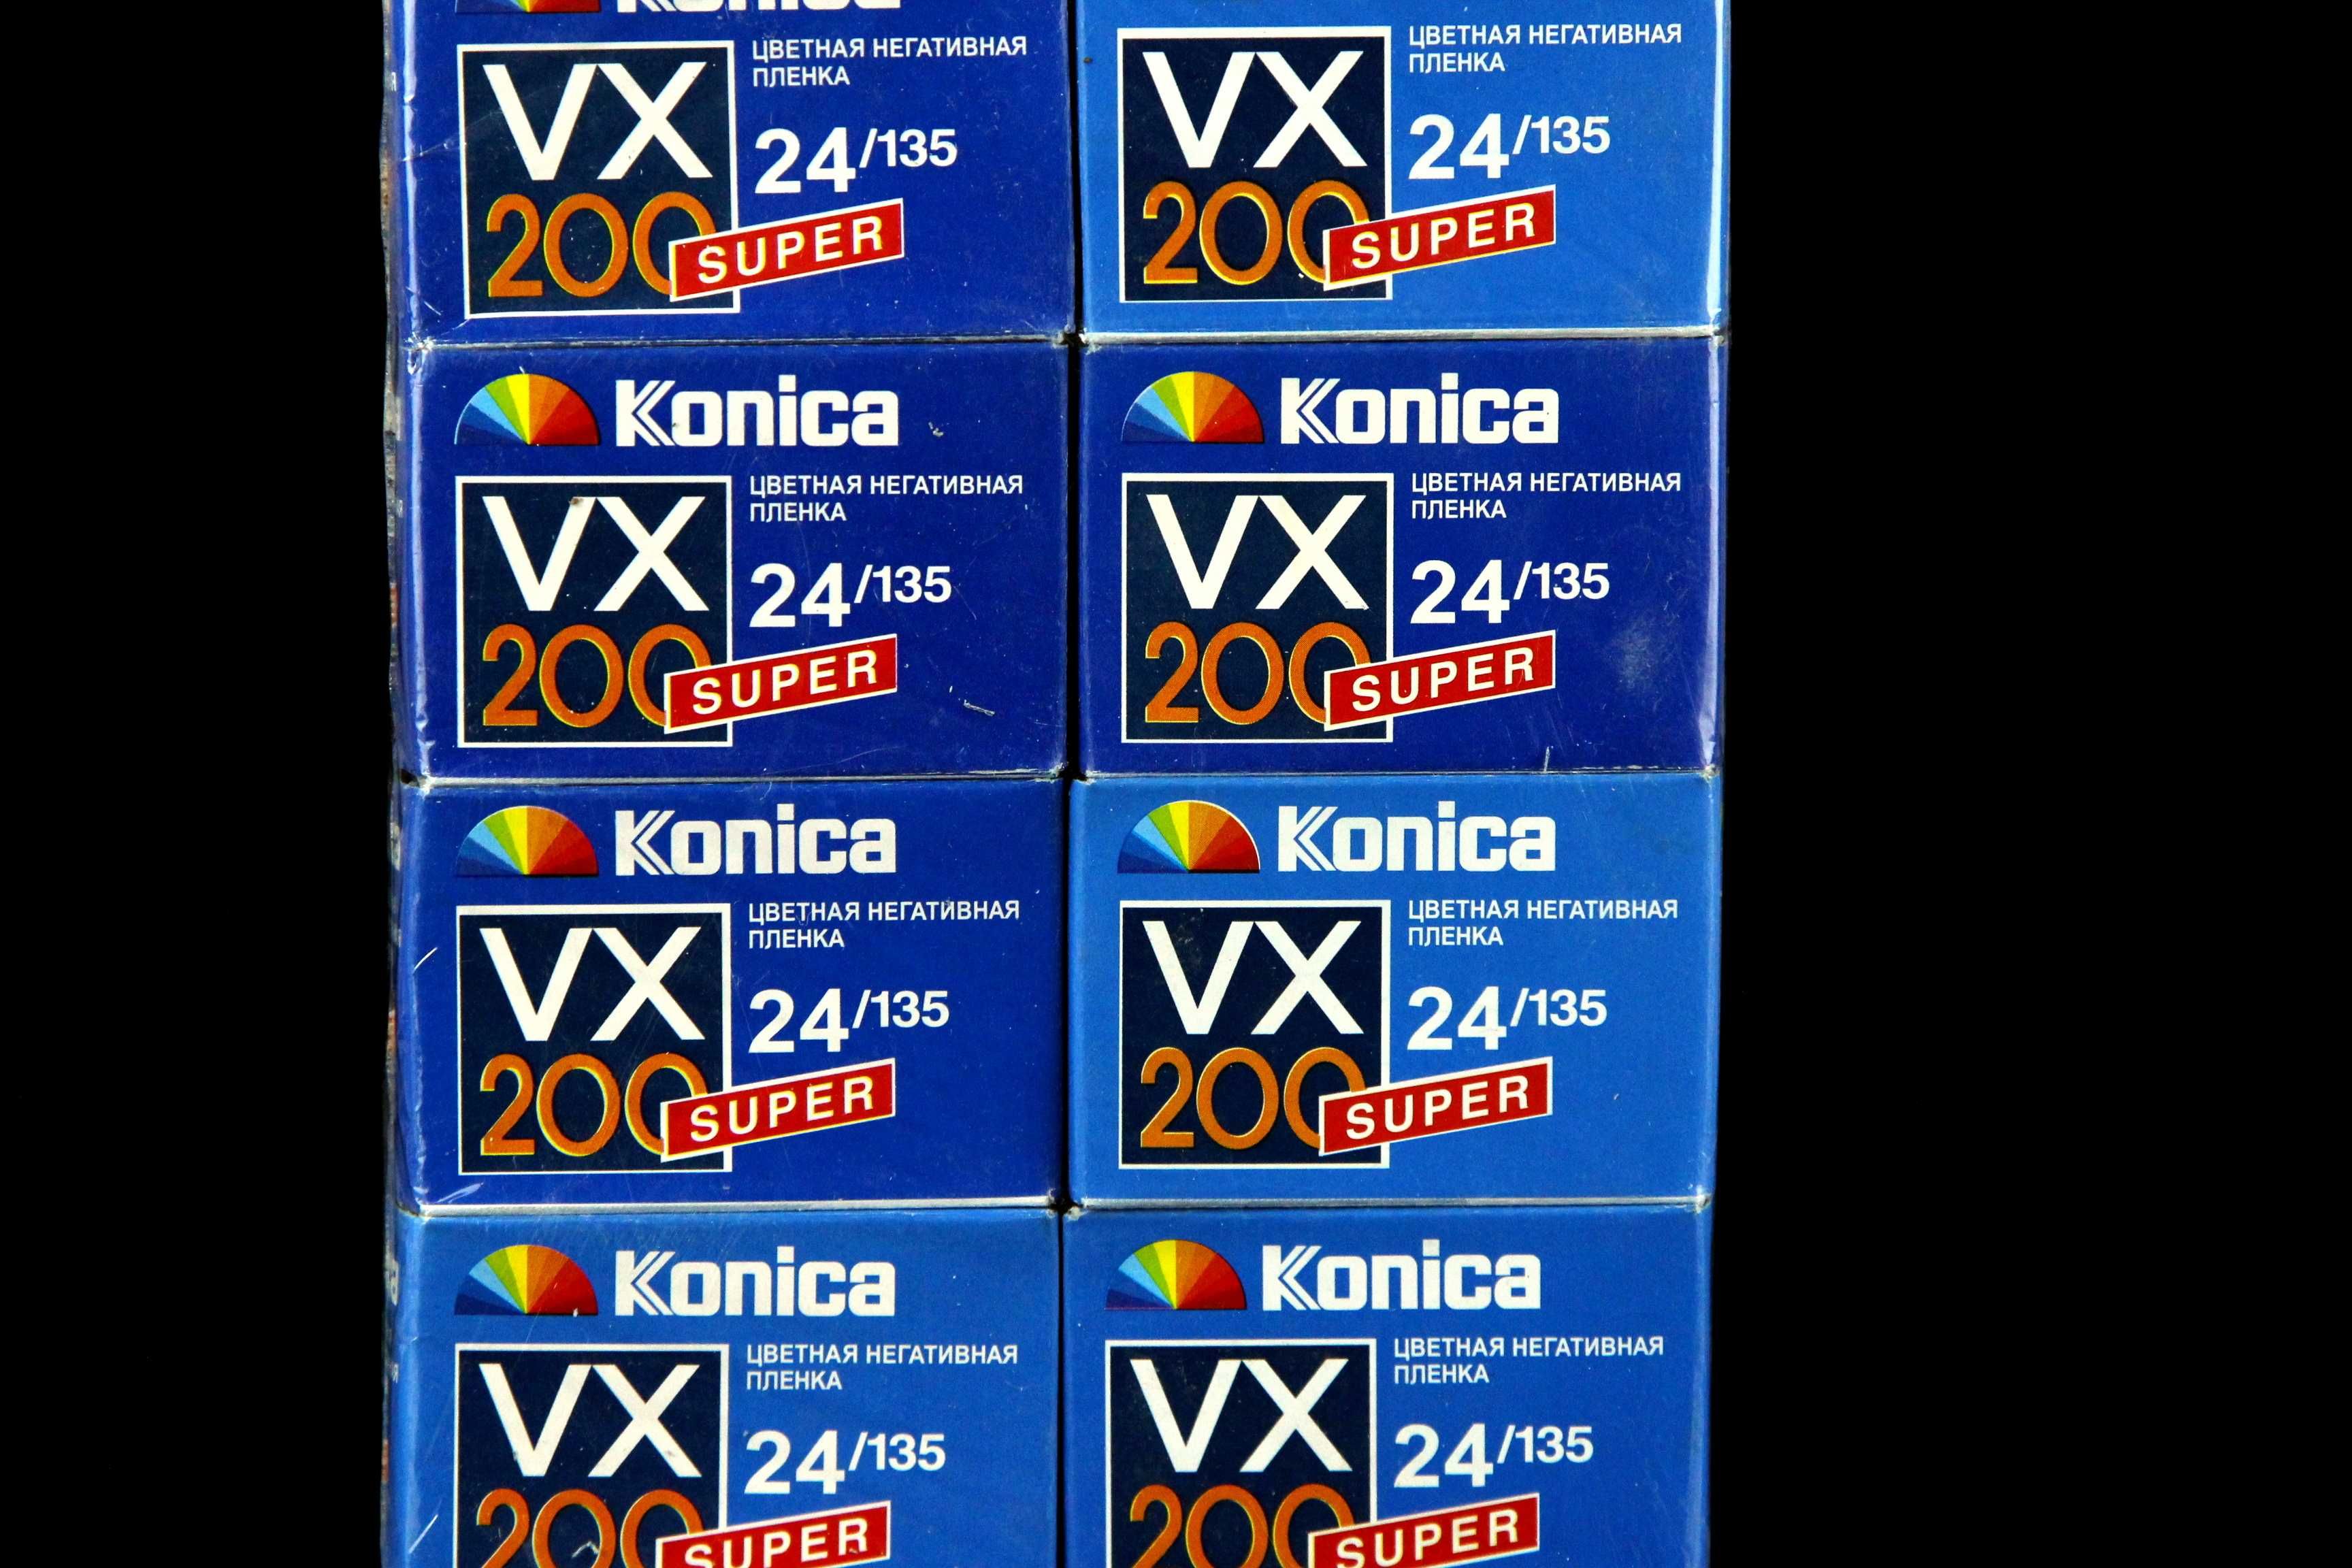 Плёнка Фотоплёнка KONICA Super VX 200 (24/135) Блок - 10 штук. Новая.